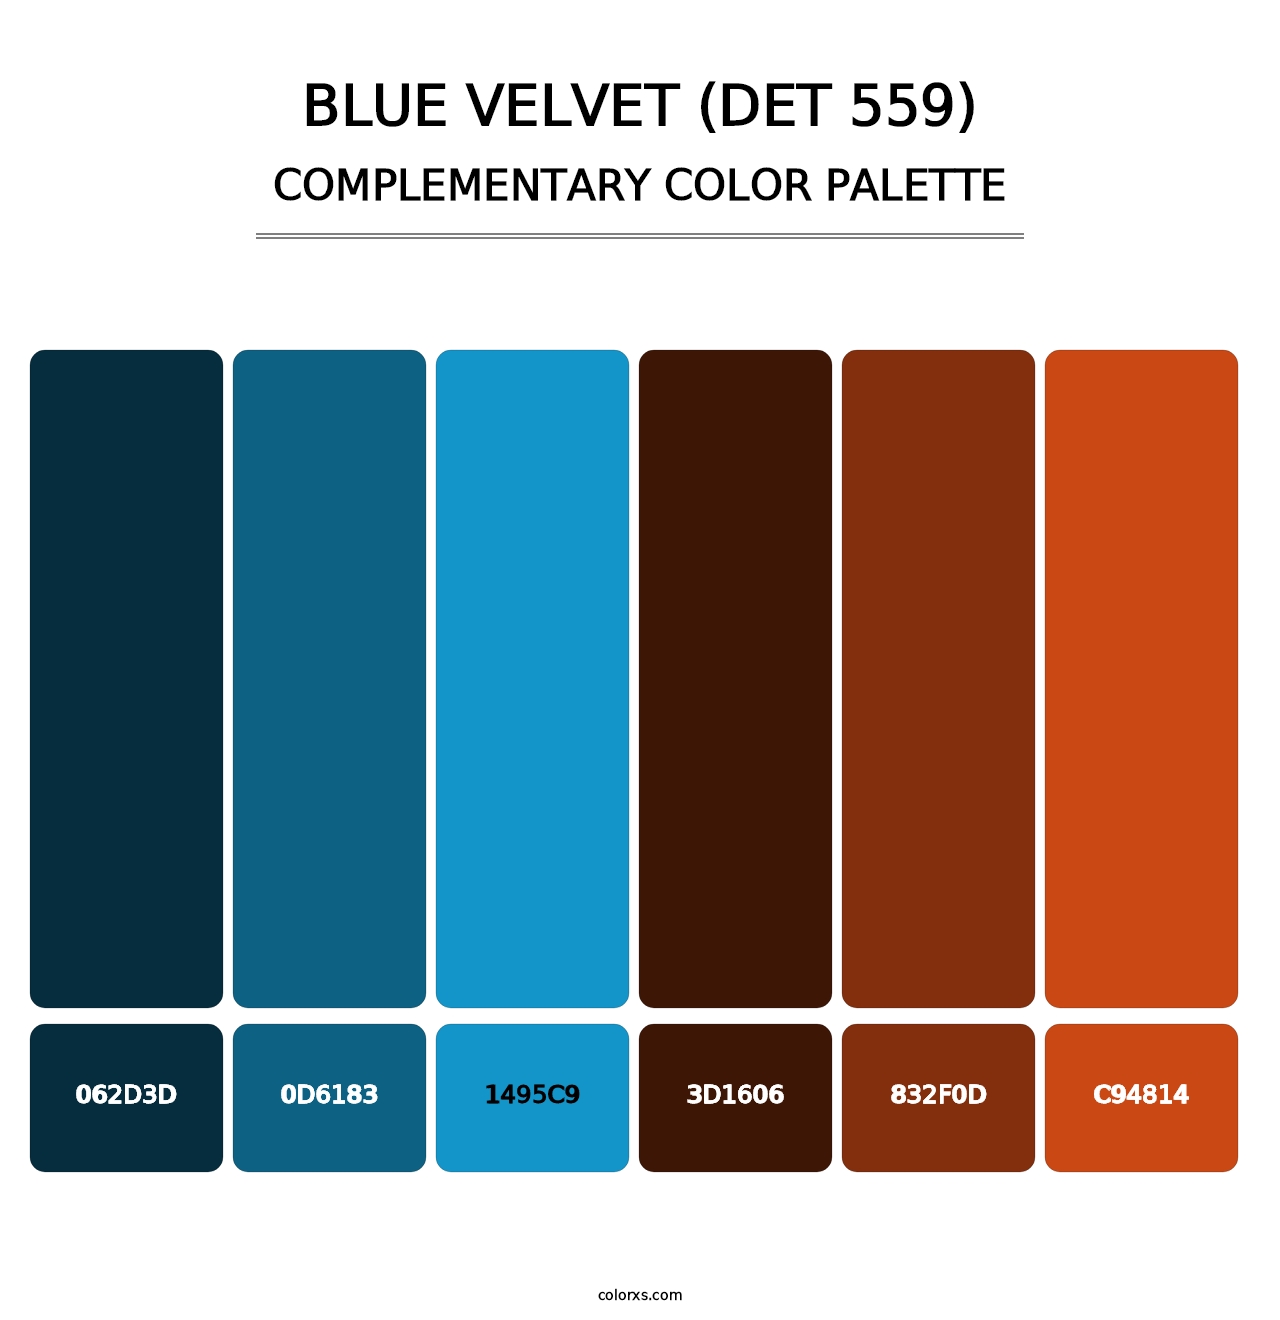 Blue Velvet (DET 559) - Complementary Color Palette